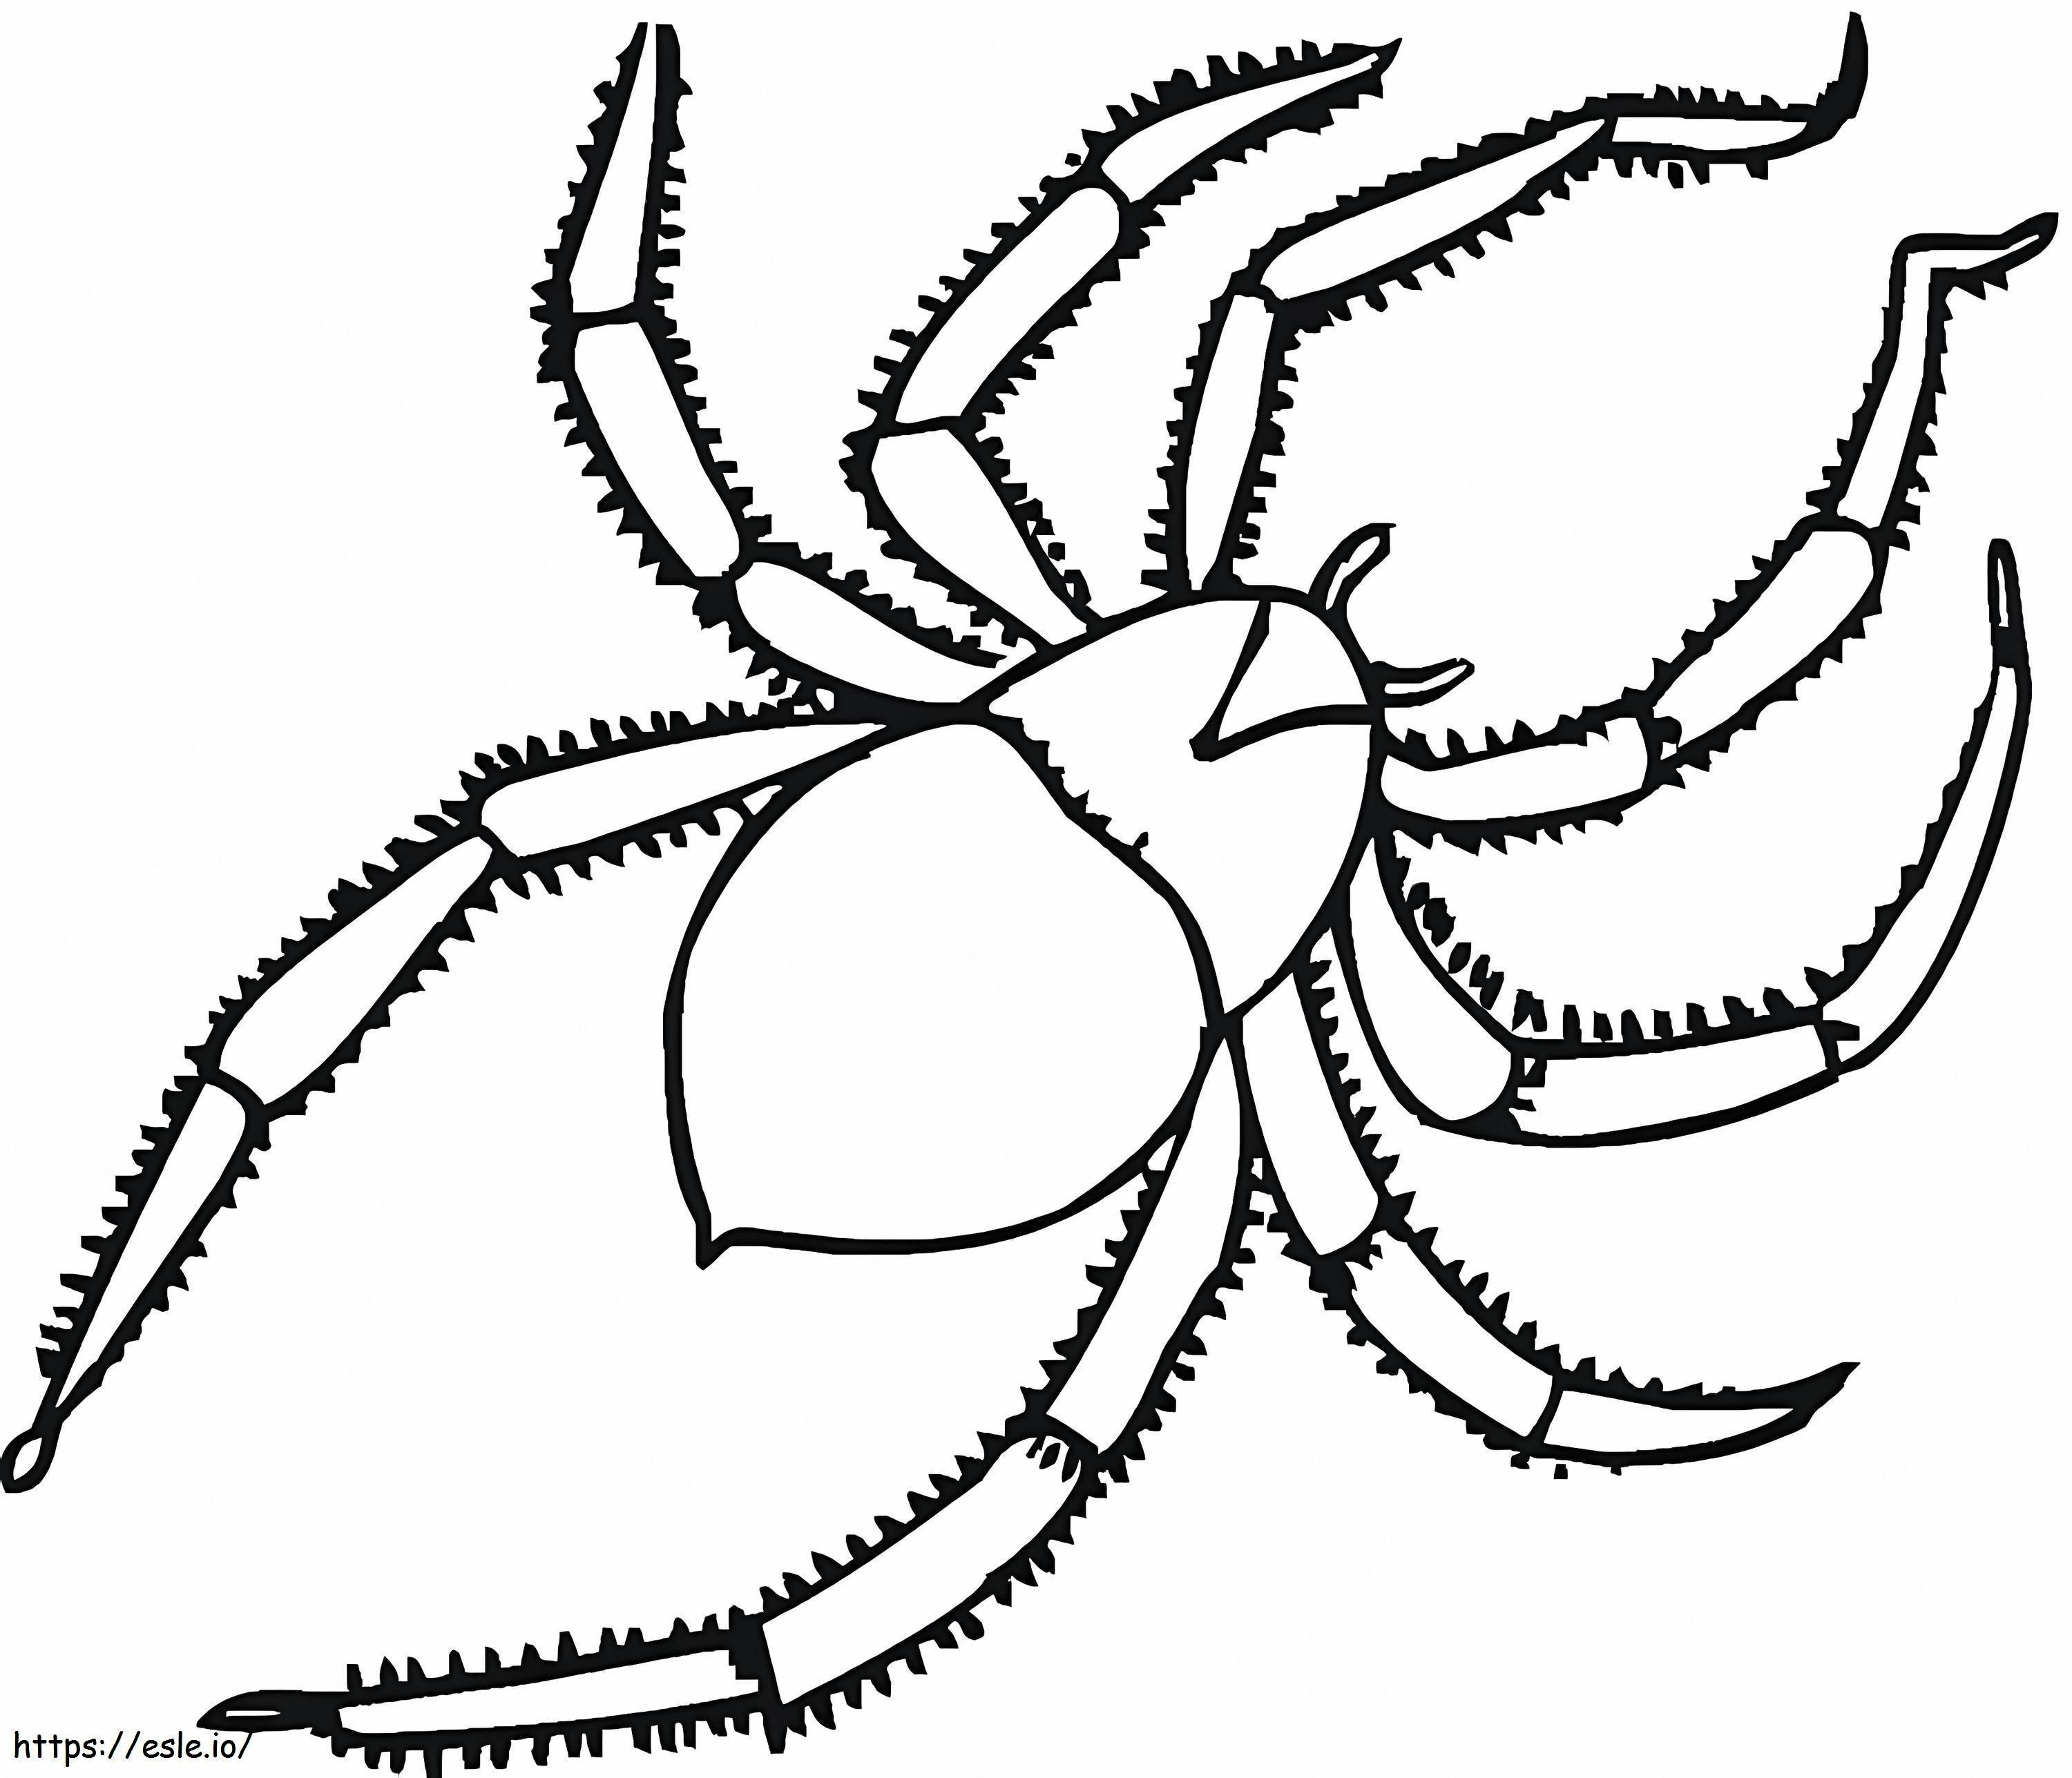 Eine Spinne ausmalbilder